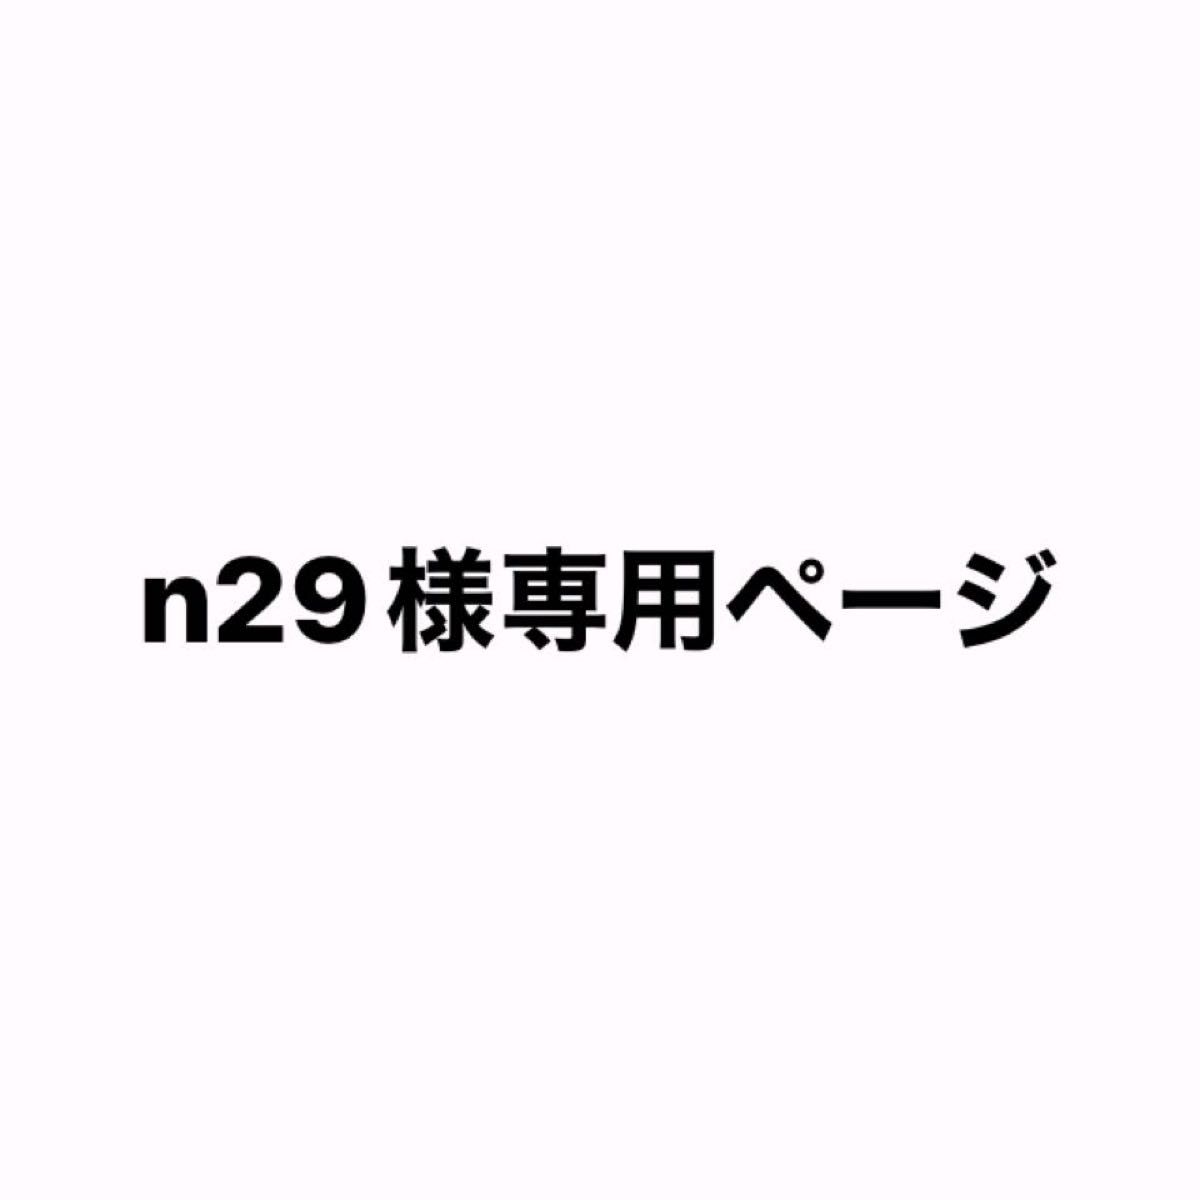 n29様専用ページ